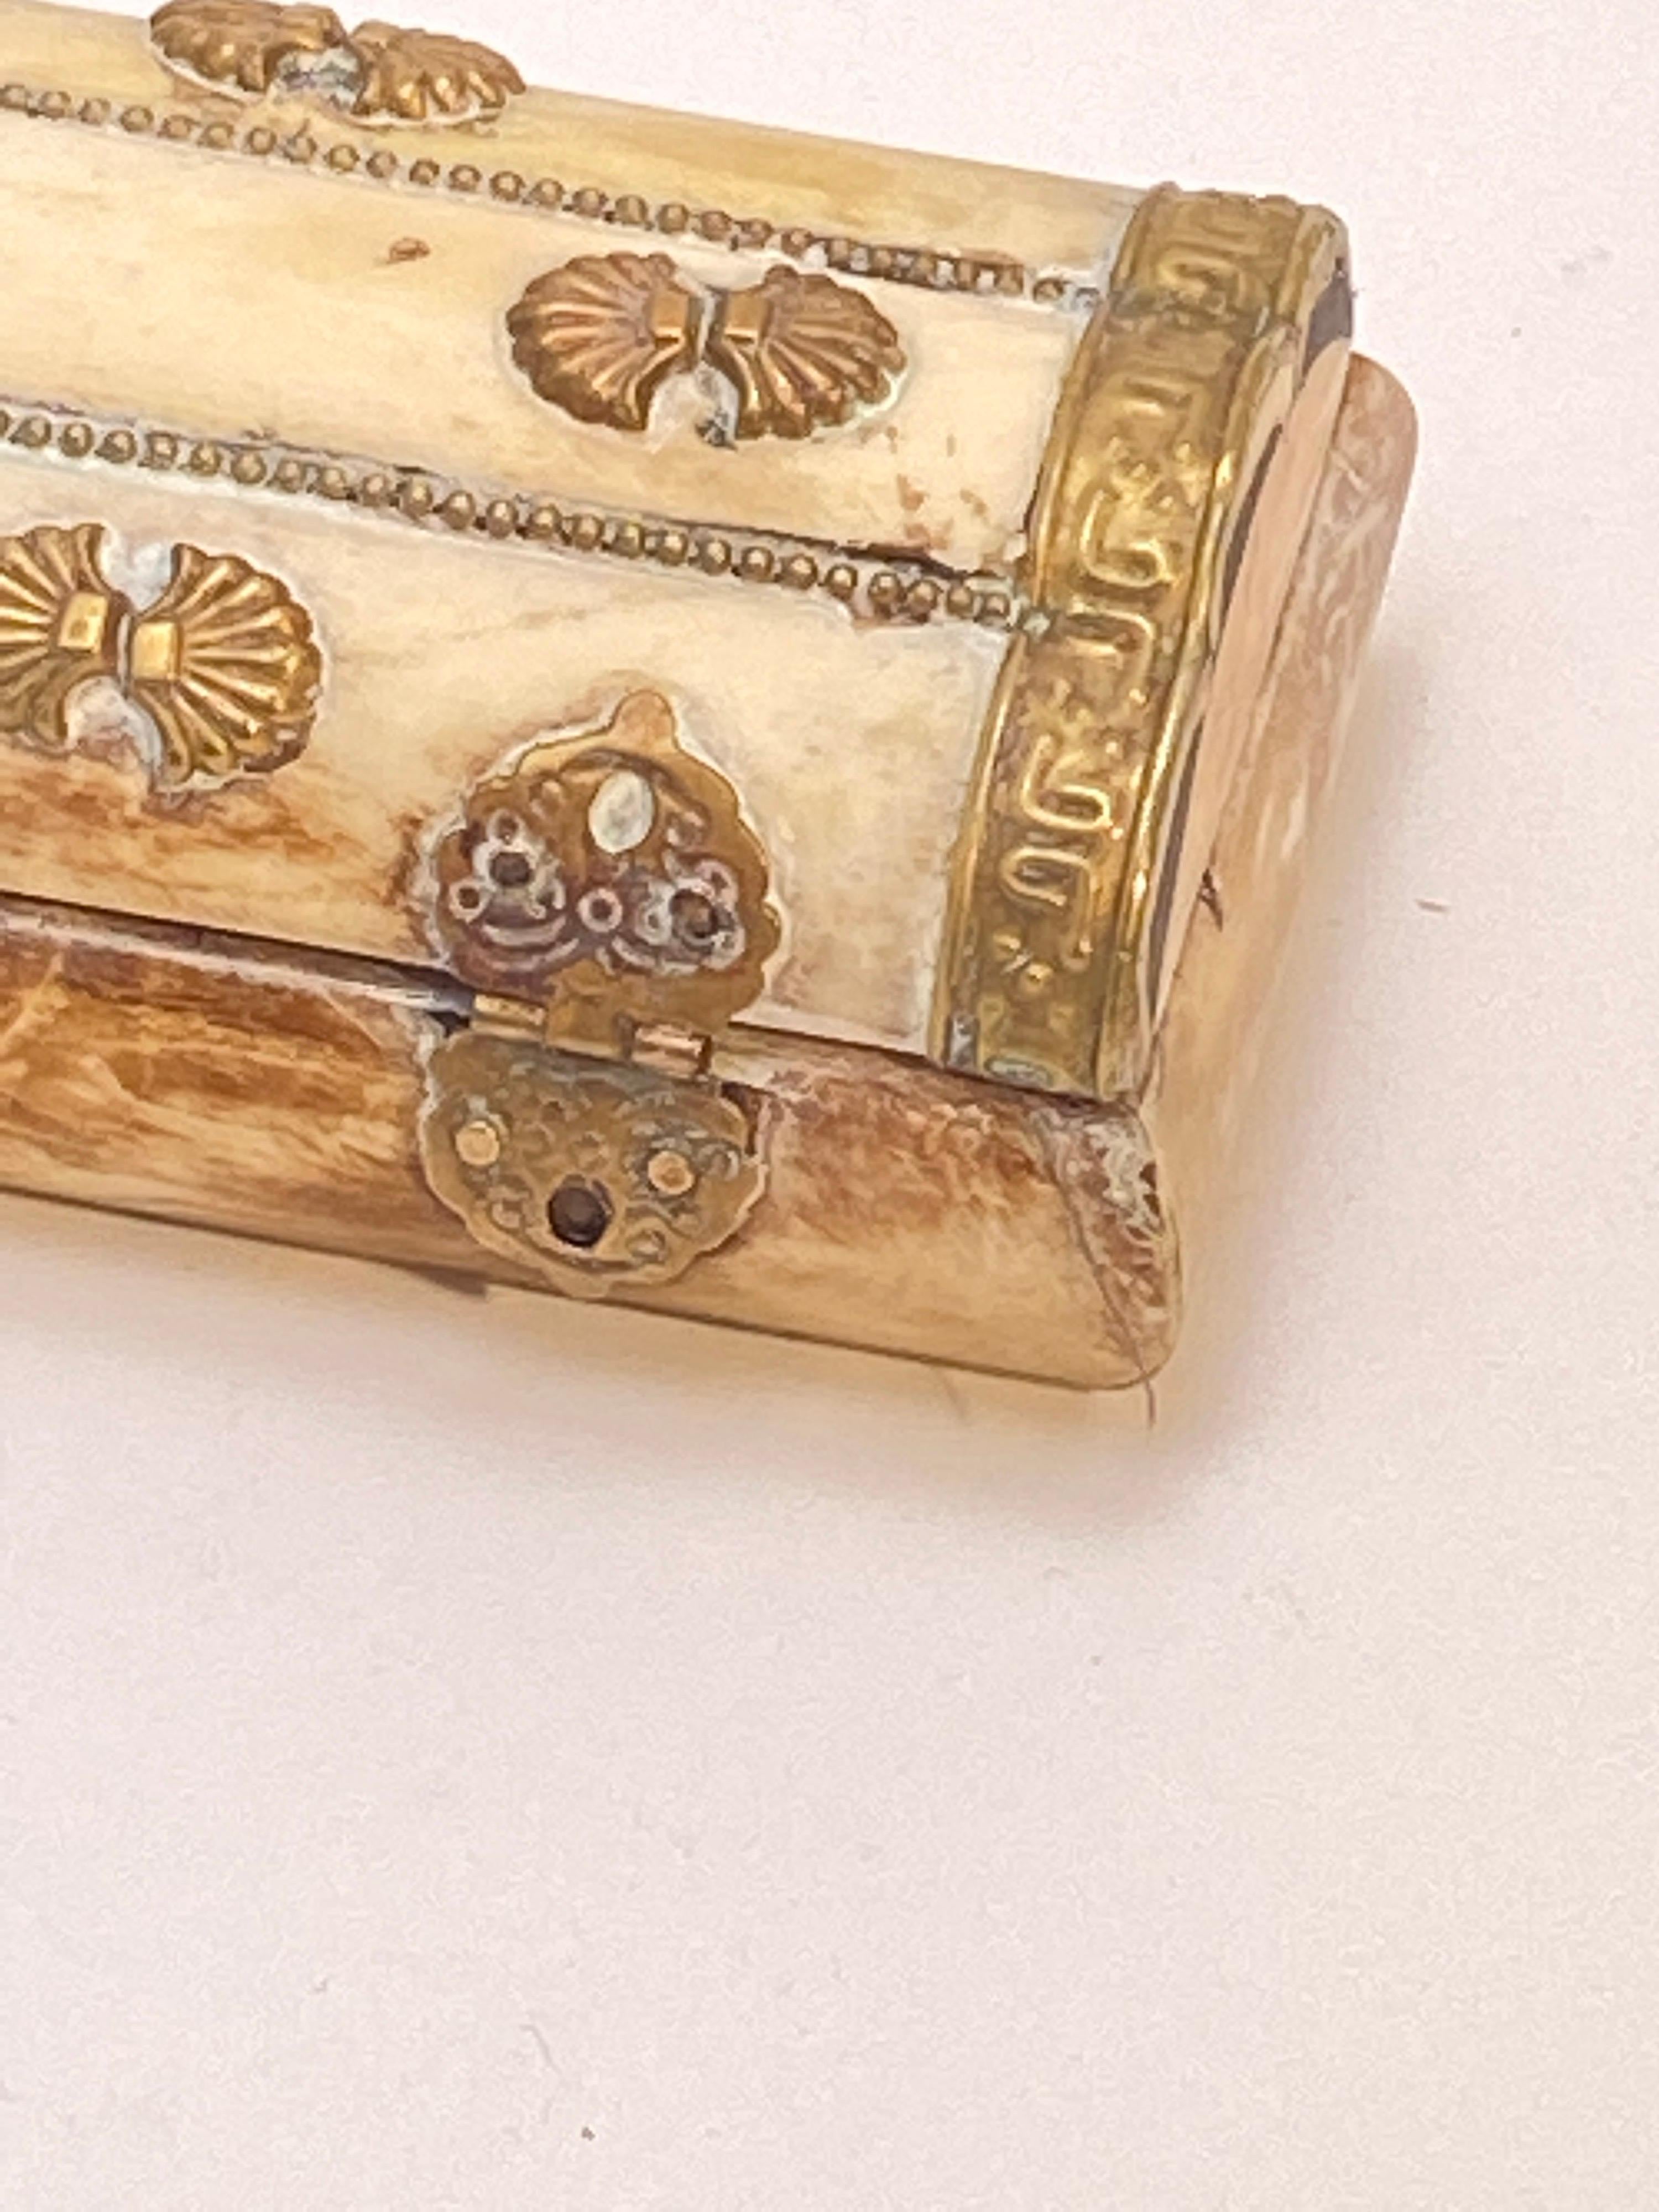 Cette boîte est une boîte à bijoux indienne vintage en os de chameau.
Forme rectangulaire avec détails en laiton martelé à la main. Le couvercle est orné d'un motif de feuilles percées et de perles de laiton insérées entre les os. Boîte à bijoux